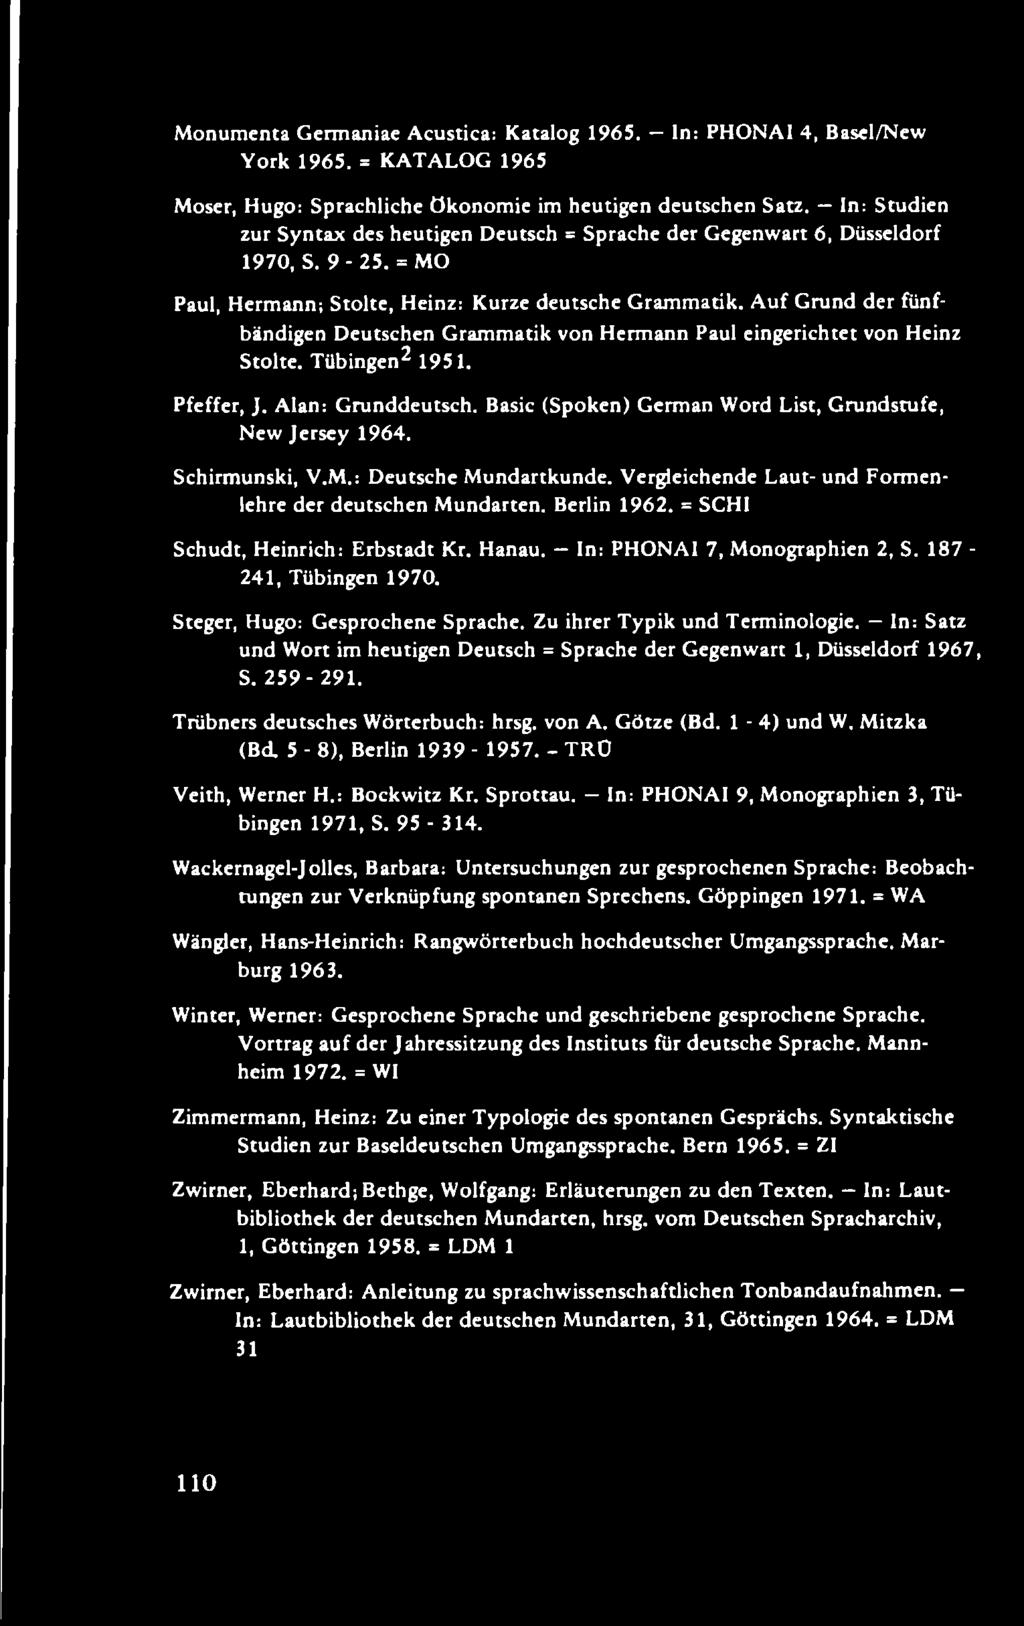 A uf Grund der fünfbändigen Deutschen Grammatik von Hermann Paul eingerichtet von Heinz Stolte. Tübingen2 1951. Pfeffer, J. Alan: Grunddeutsch.